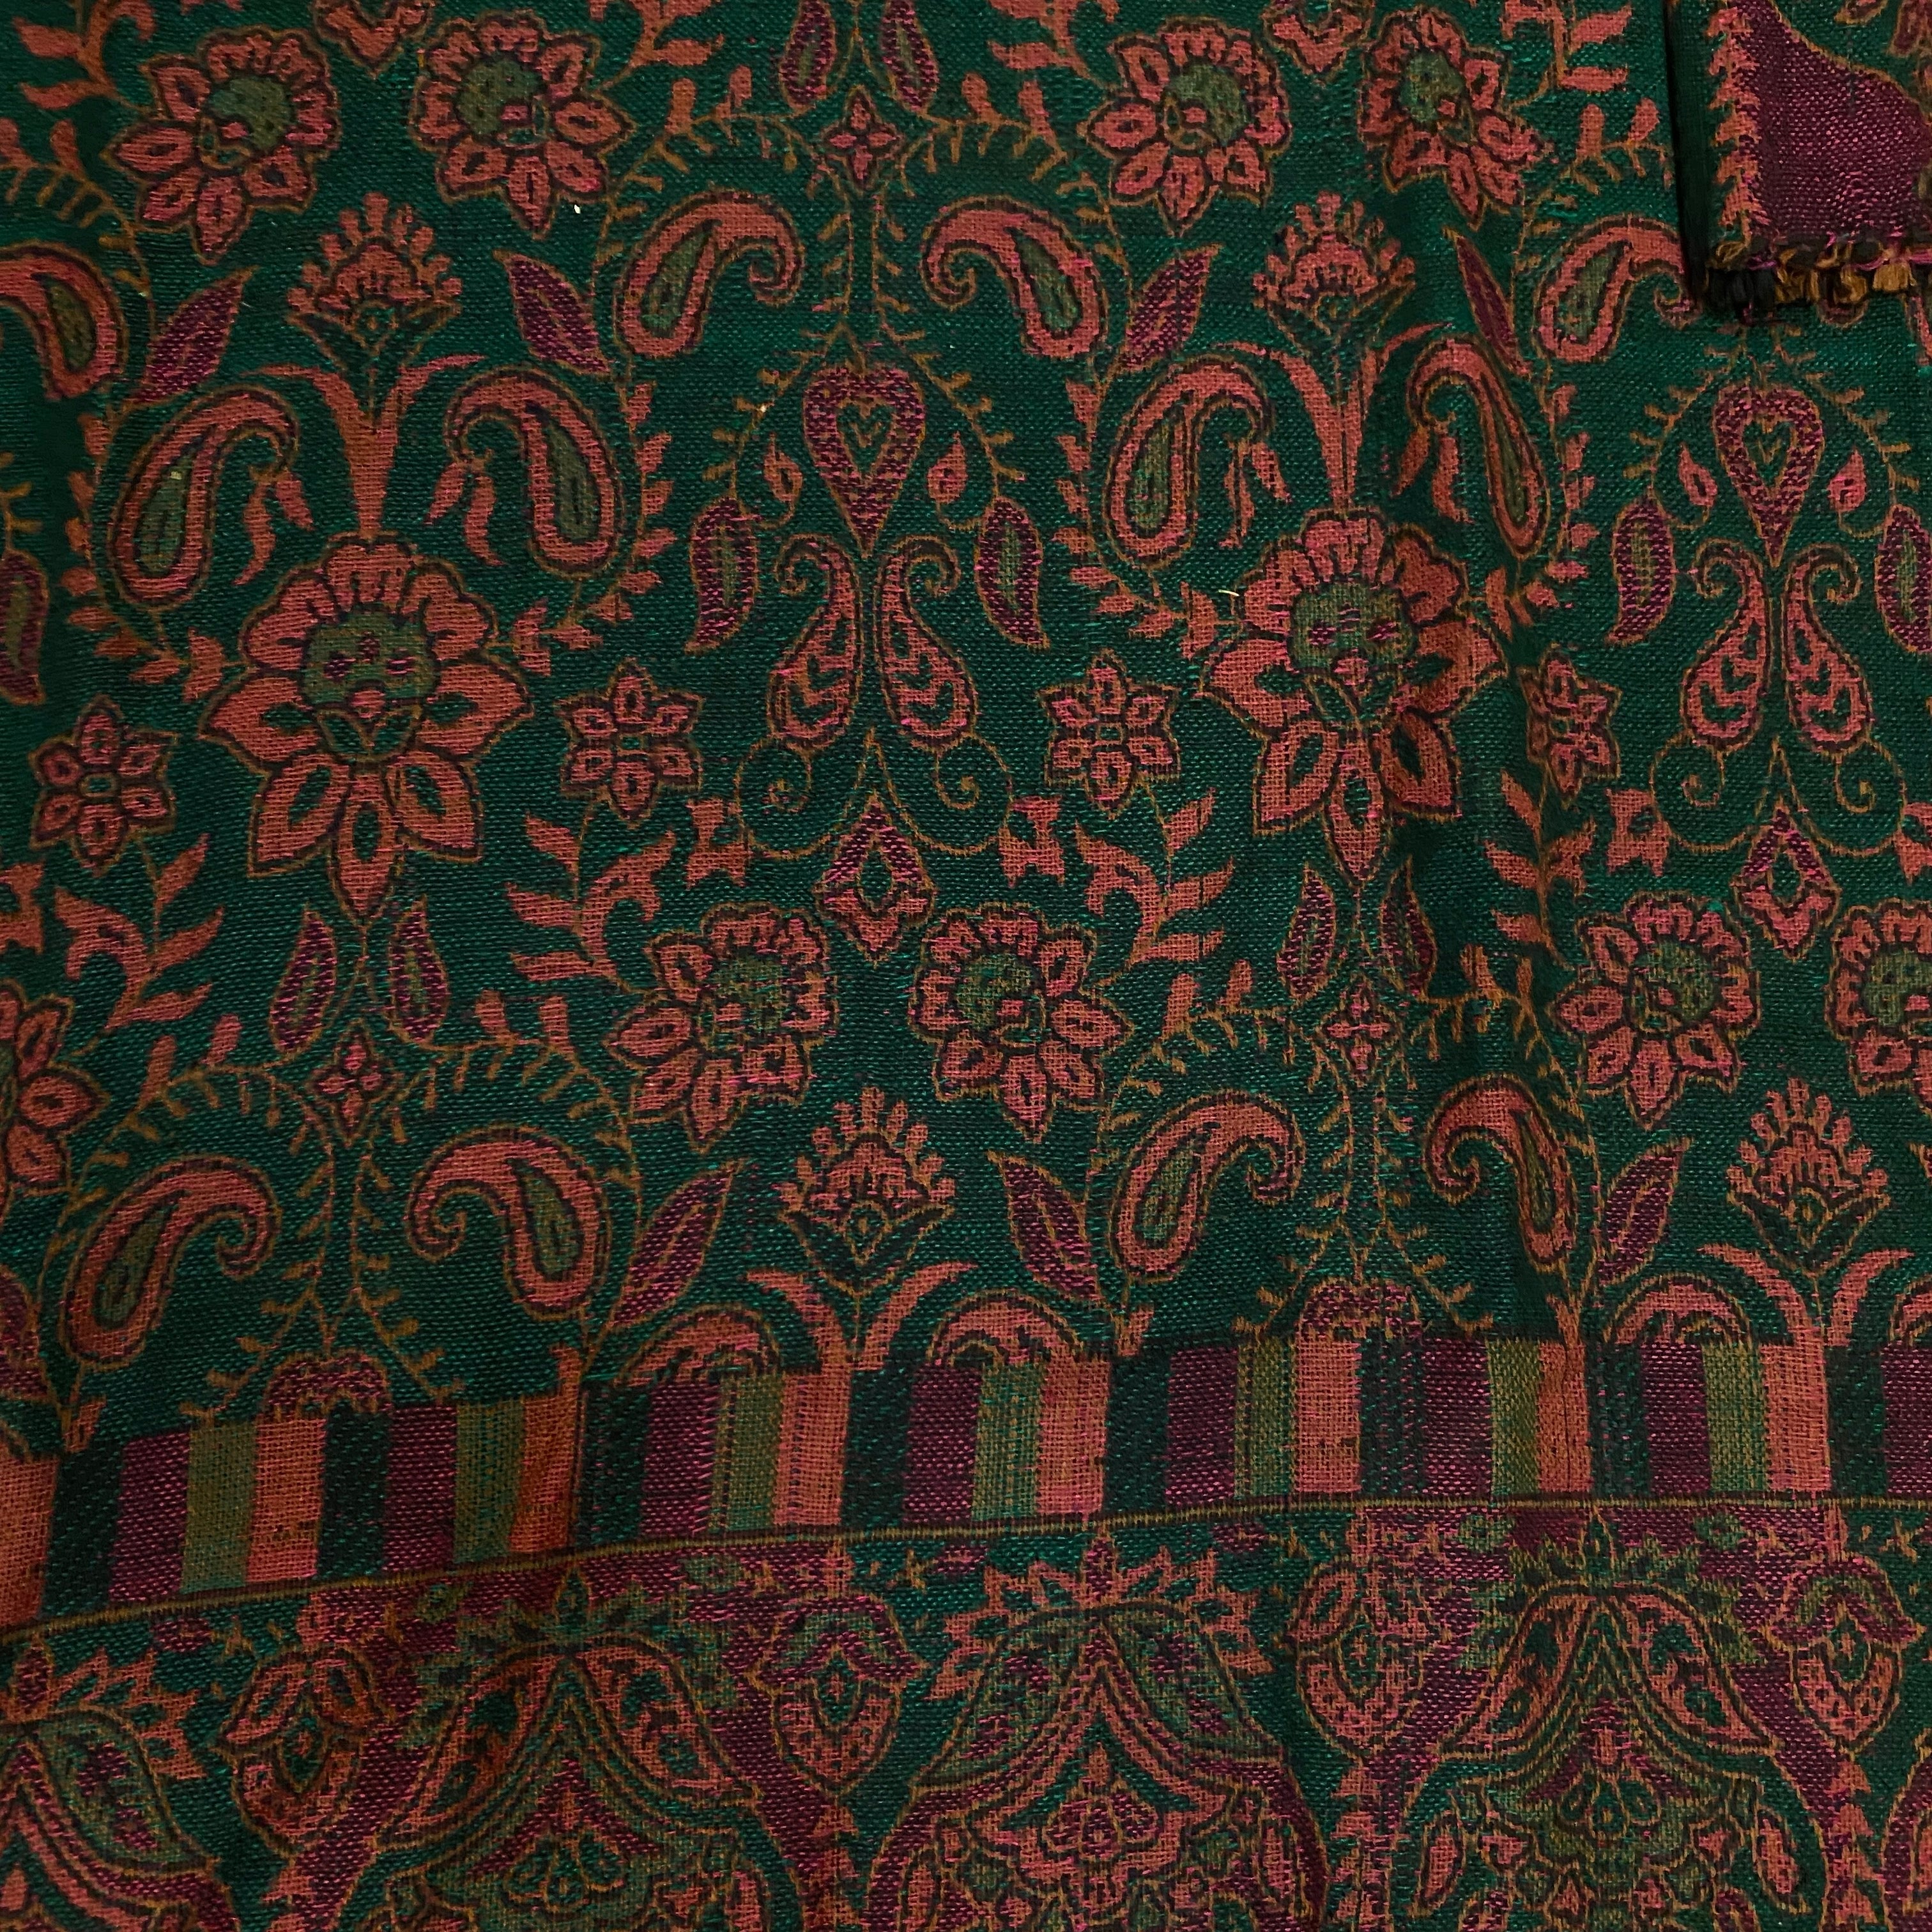 Woolen Maroon Green Kurta - Size 44 - Vintage India NYC